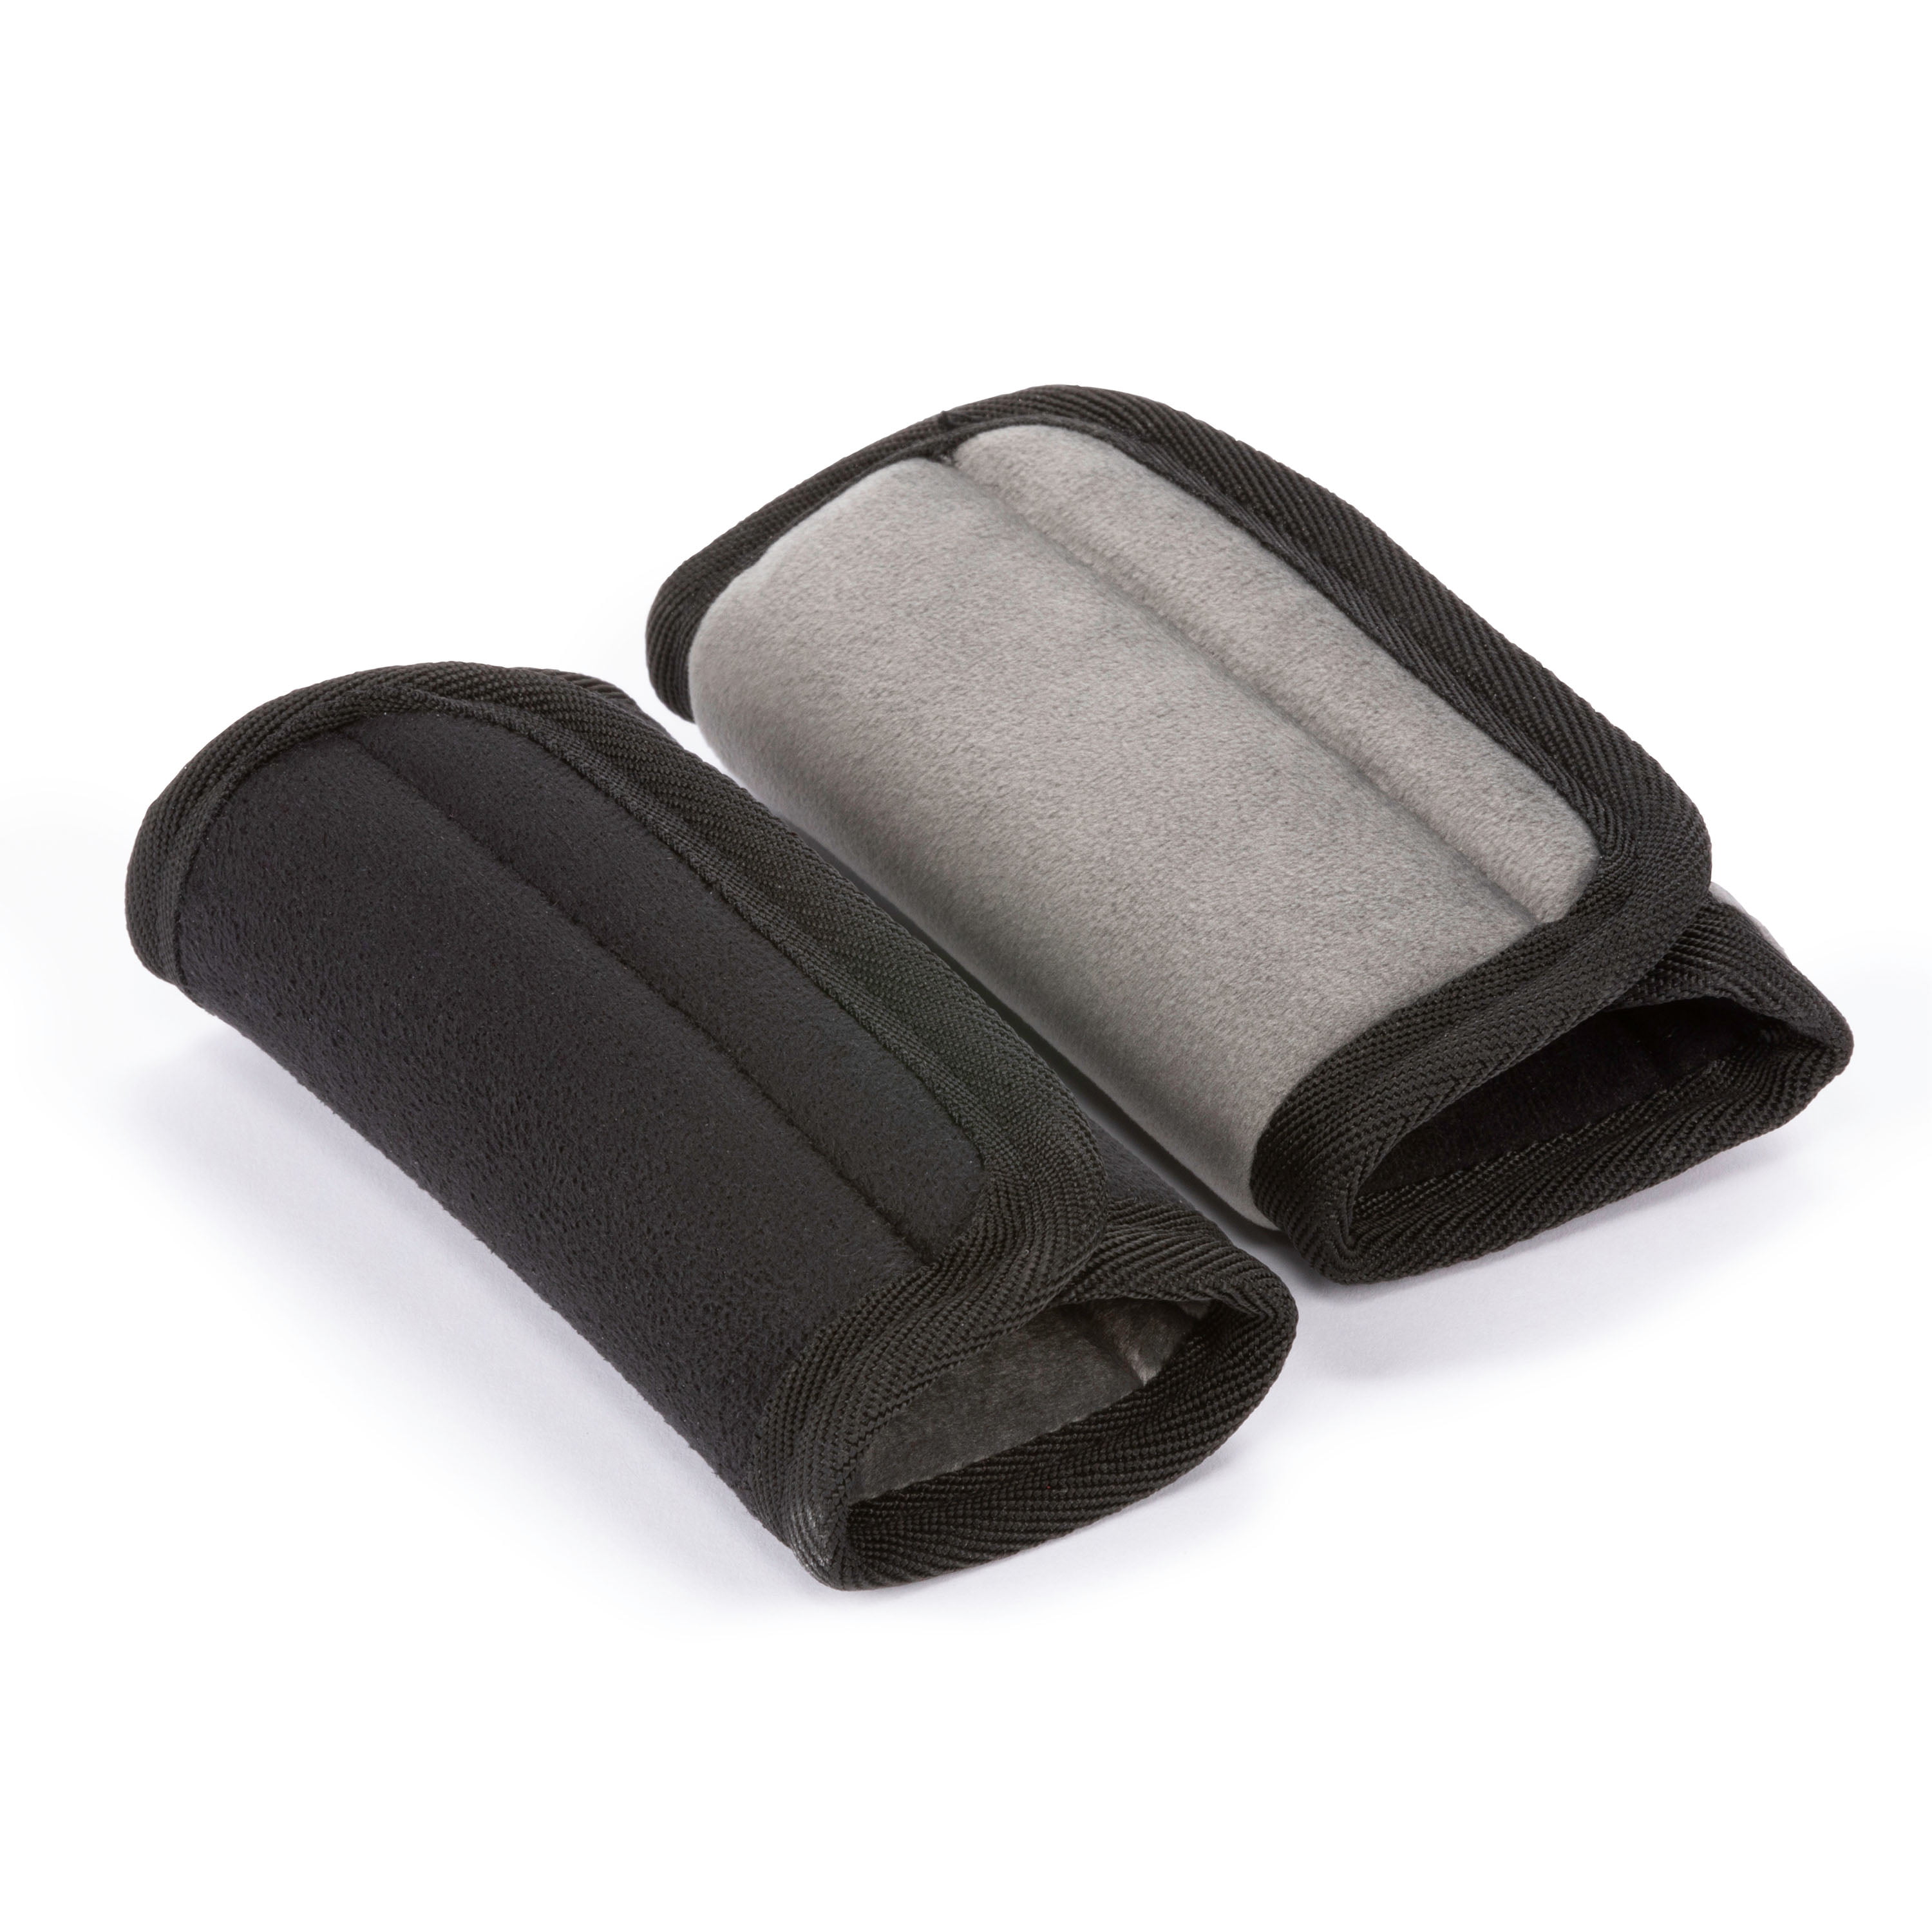 2Pcs Black Simple Useful Shoulder Strap Handy Carrier Straps for Kids Boys Girls 